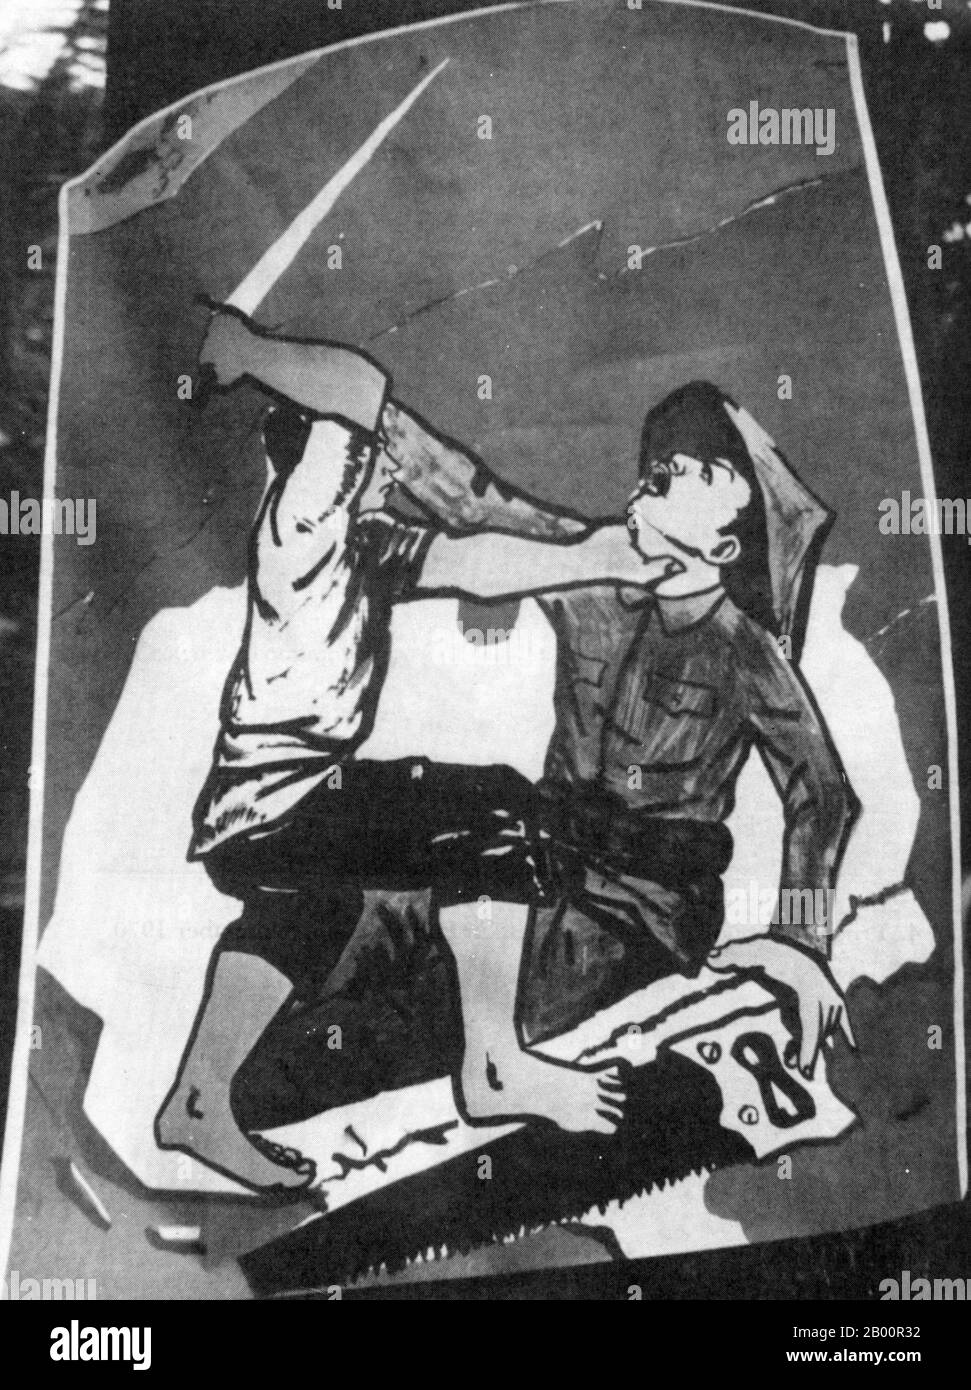 Kambodscha: Ein anti-vietnamesisches Straßenplakat aus der Lon-Nol-Ära (1970-1975). Das Plakat zeigt einen Khmer-Patrioten, der einen Vietnamesen attackiert, der versucht hat, kambodschanisches Staatsgebiet im Süden und Osten abzusägen. Stockfoto